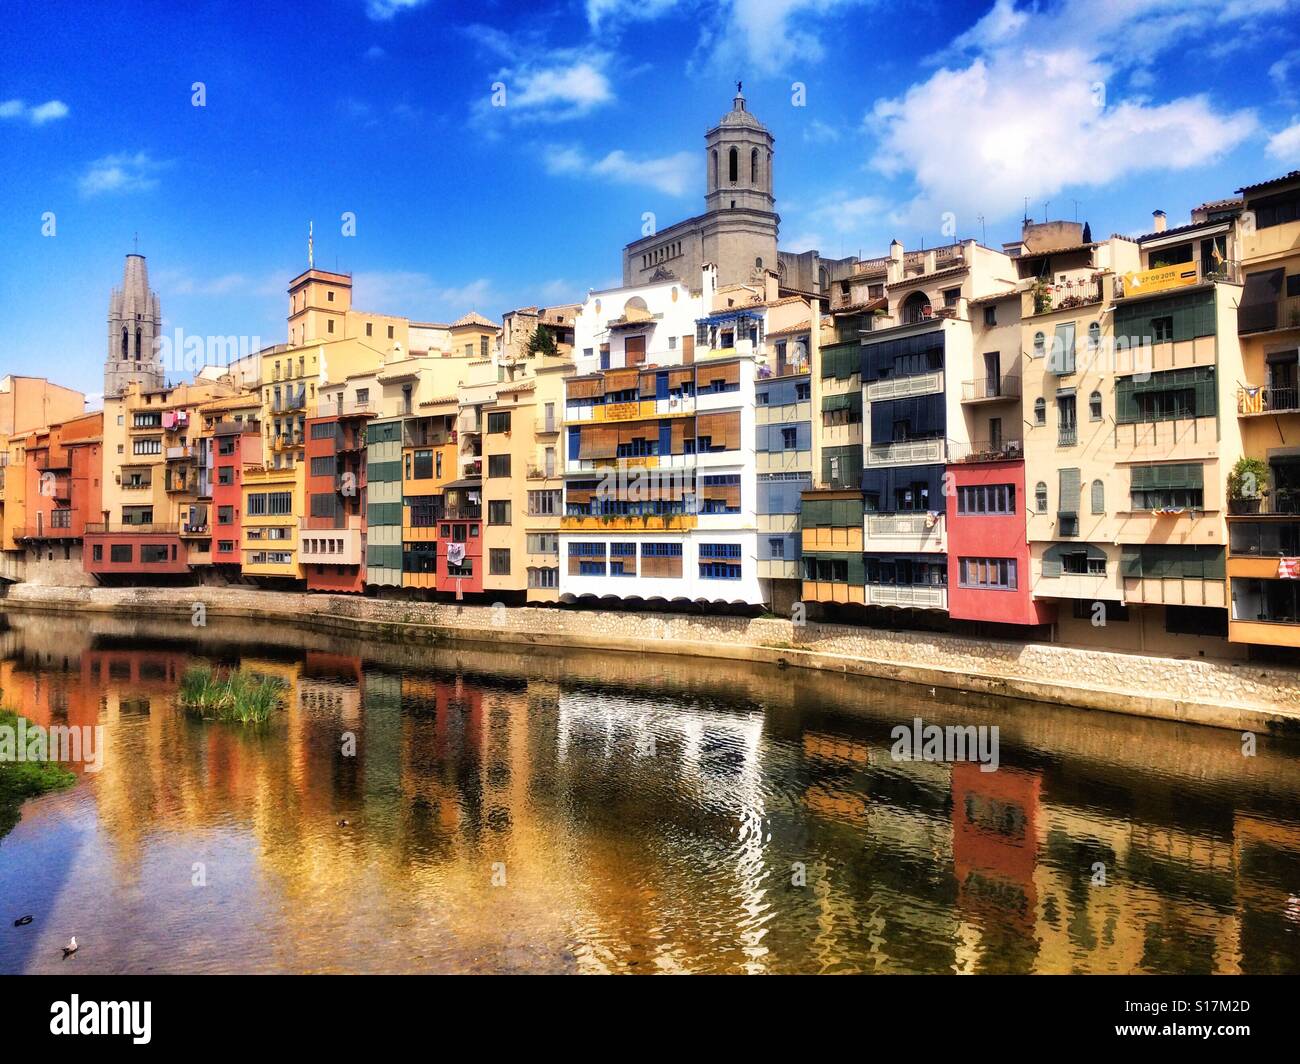 Girona in Catalonia, Spain Stock Photo